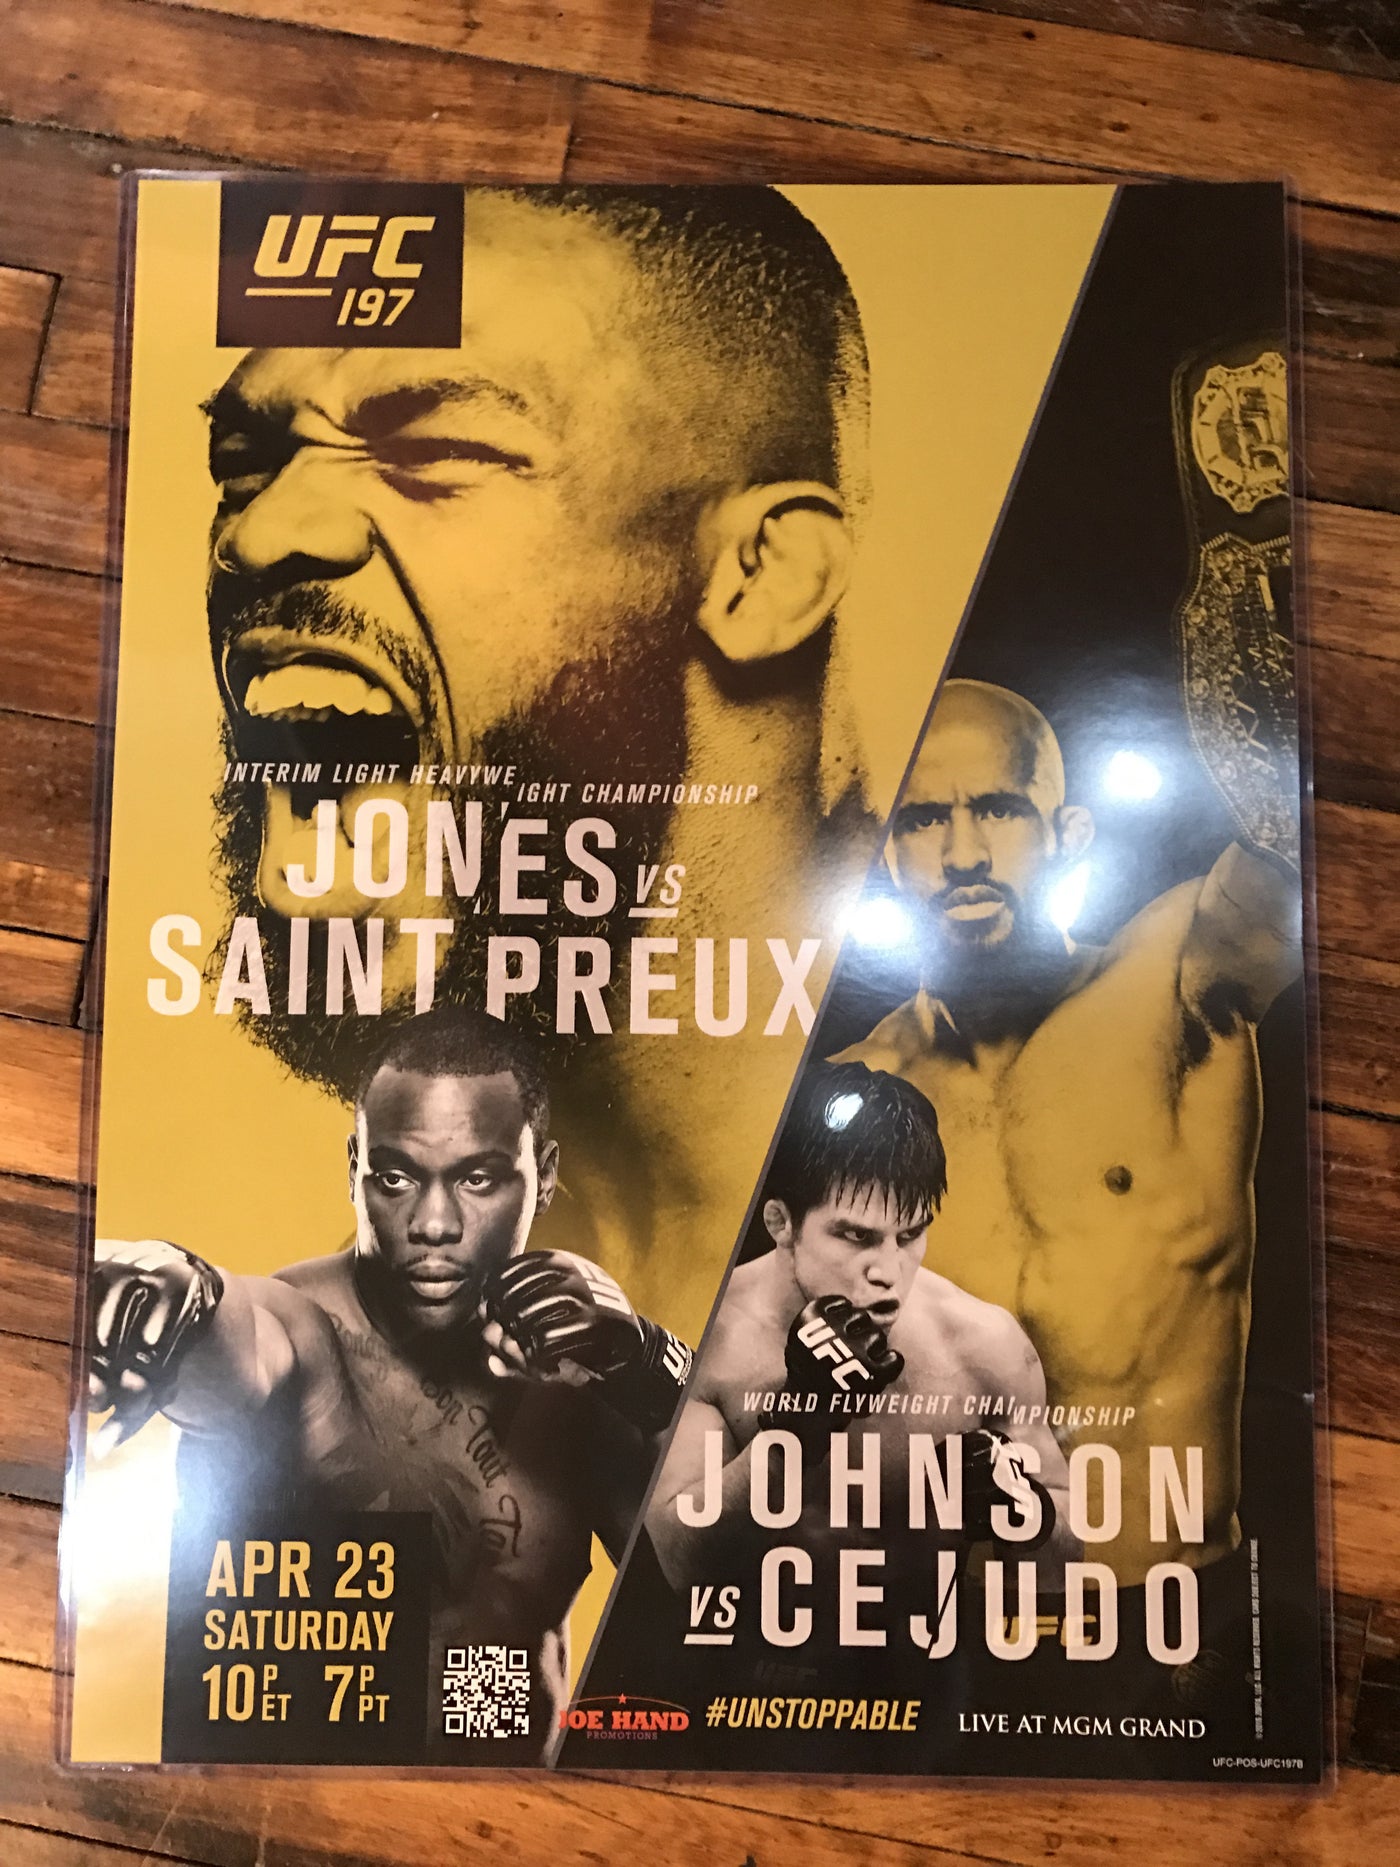 loyaliteit Fobie klei UFC 197 poster Jones vs. Saint Preux, Johnson vs. Cejudo MGM – Sold Out  Posters